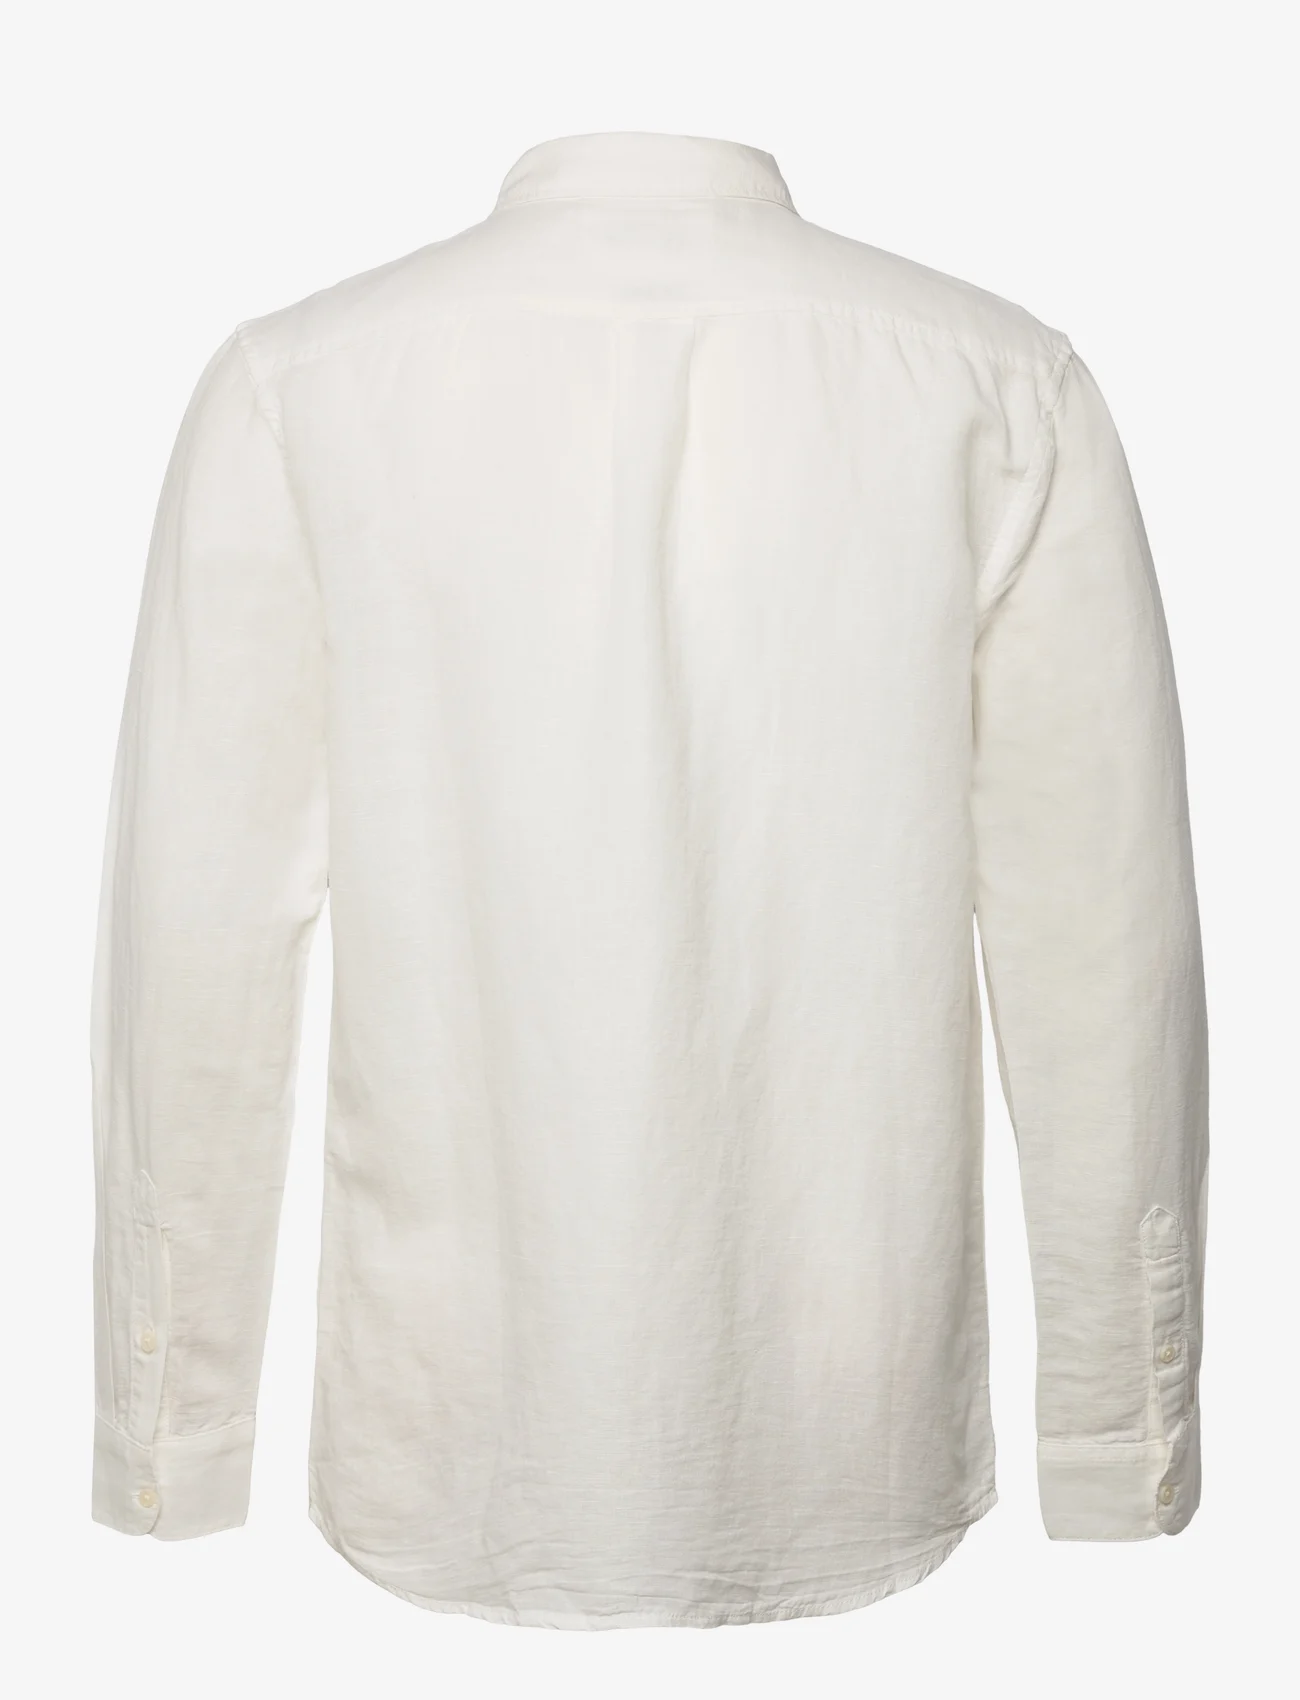 Wrangler - LS 1 PKT SHIRT - hørskjorter - worn white - 1